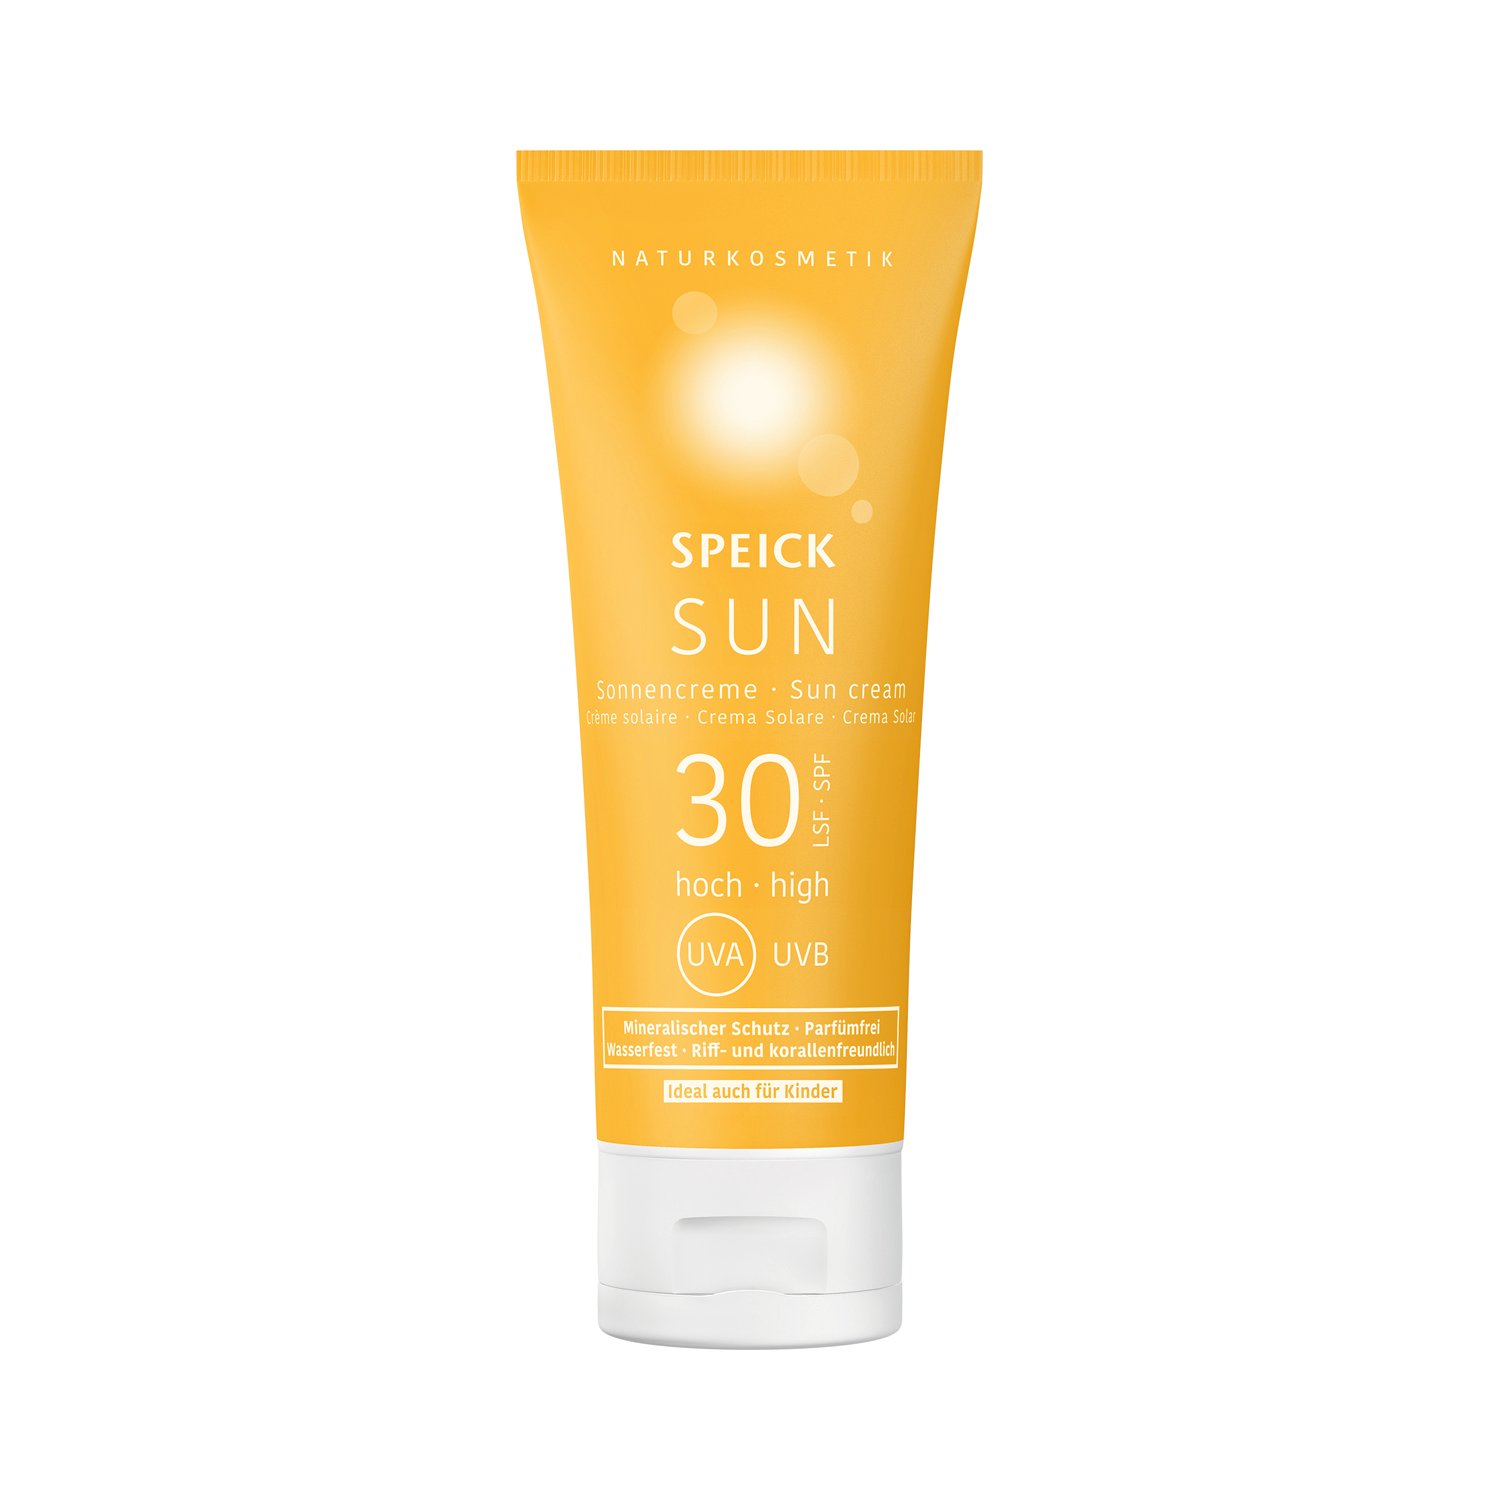 Speick Sun - Sonnencreme LSF 30